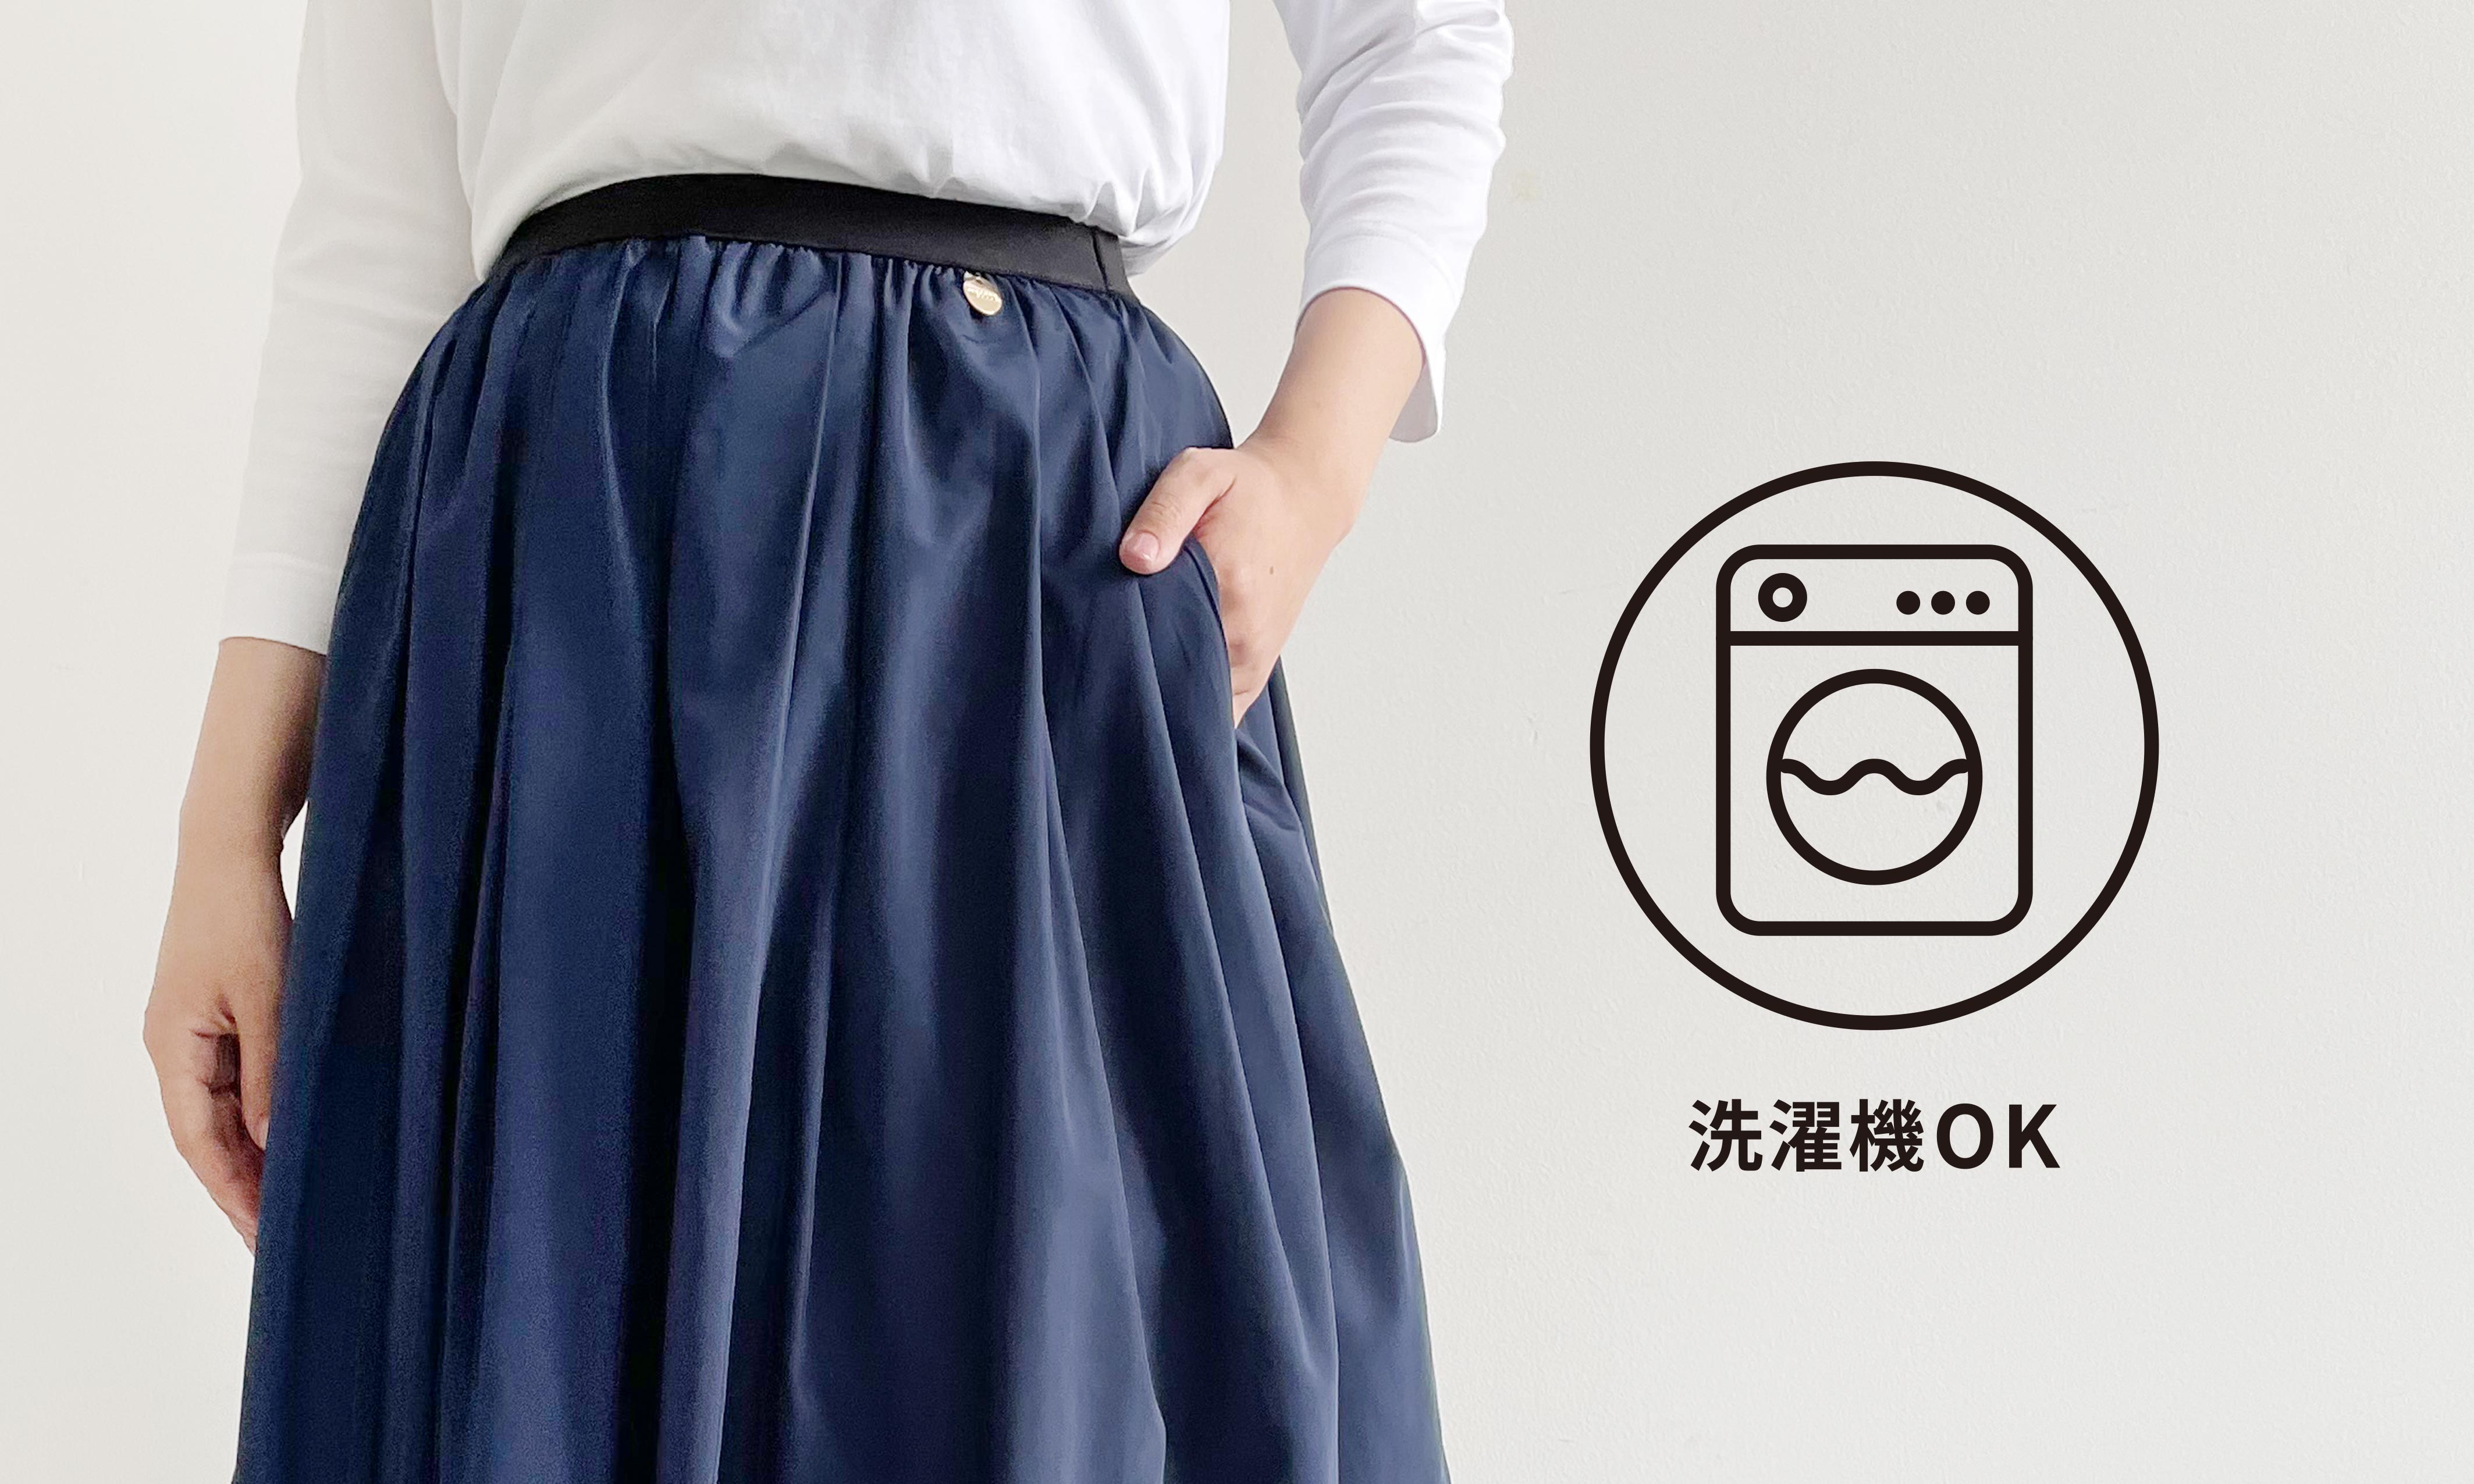 TRECODEで大人気の神戸・山の手スカート。愛される理由の一つとしてお家で手軽にお洗濯ができること！お手入れ簡単なフレアスカートは忙しいママや働く女性にとっても人気！両サイドには小物を入れれるポケット付きで機能性も優れております